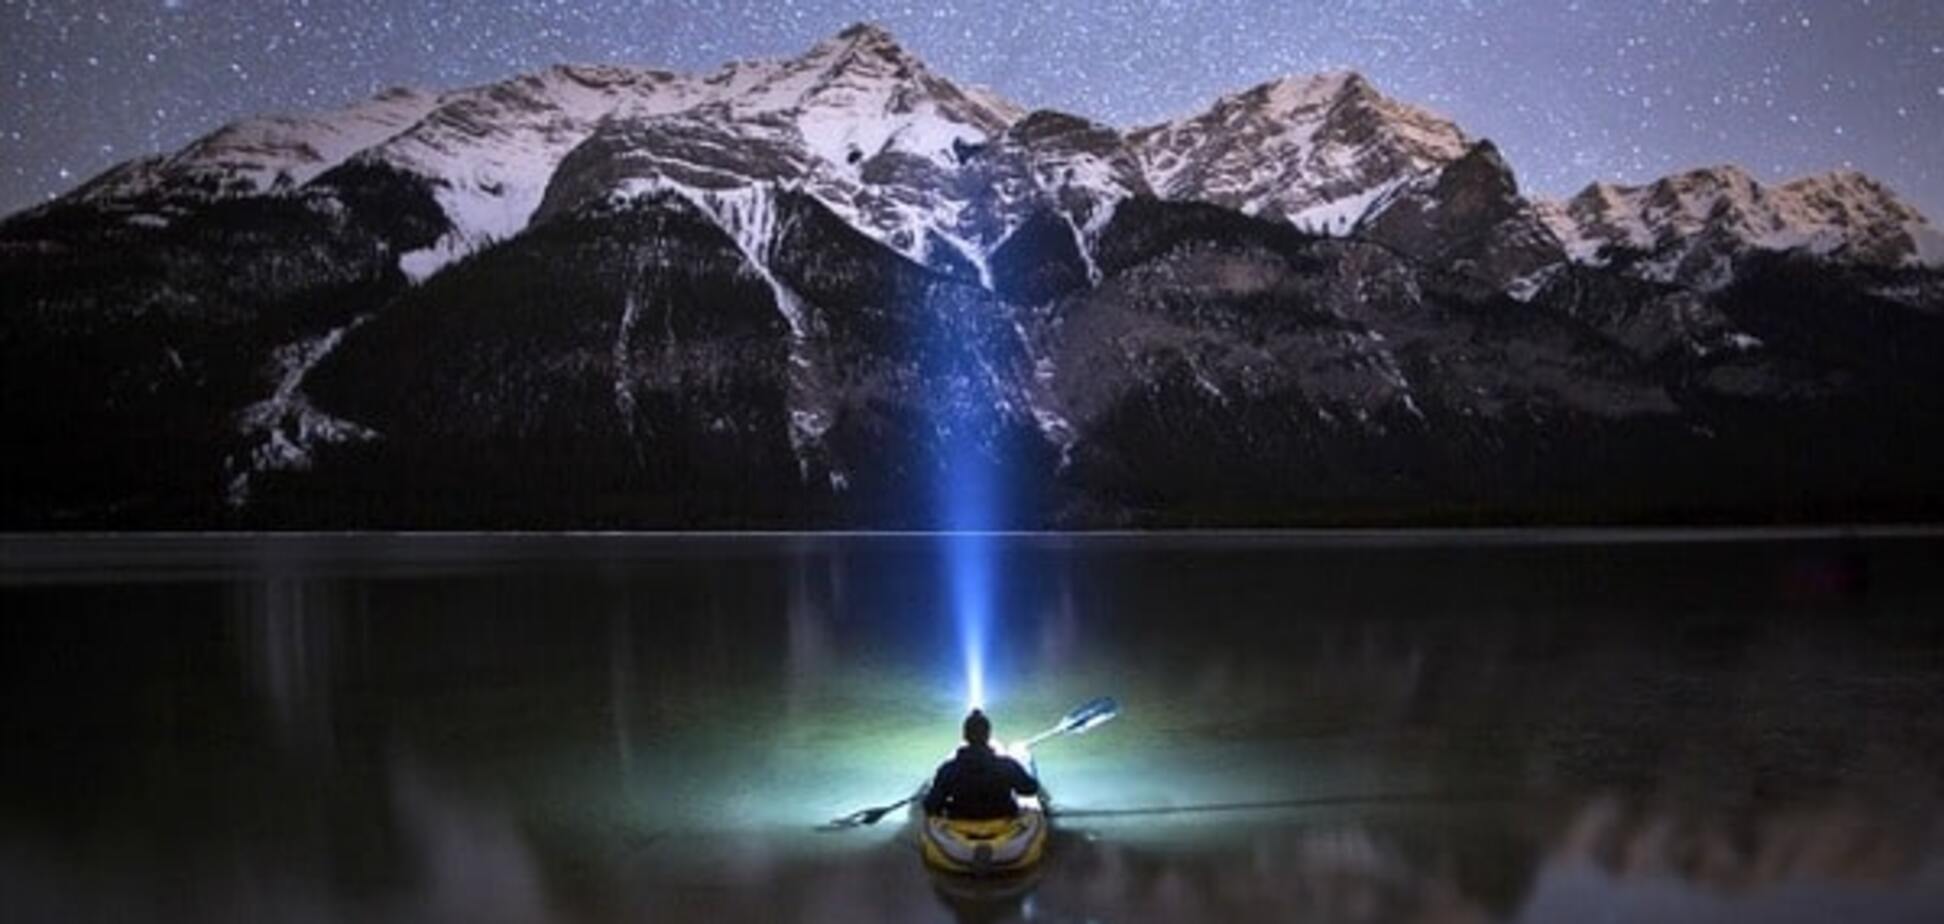 Путешественник сделал завораживающие снимки северного сияния в горах Канады: фотофакт